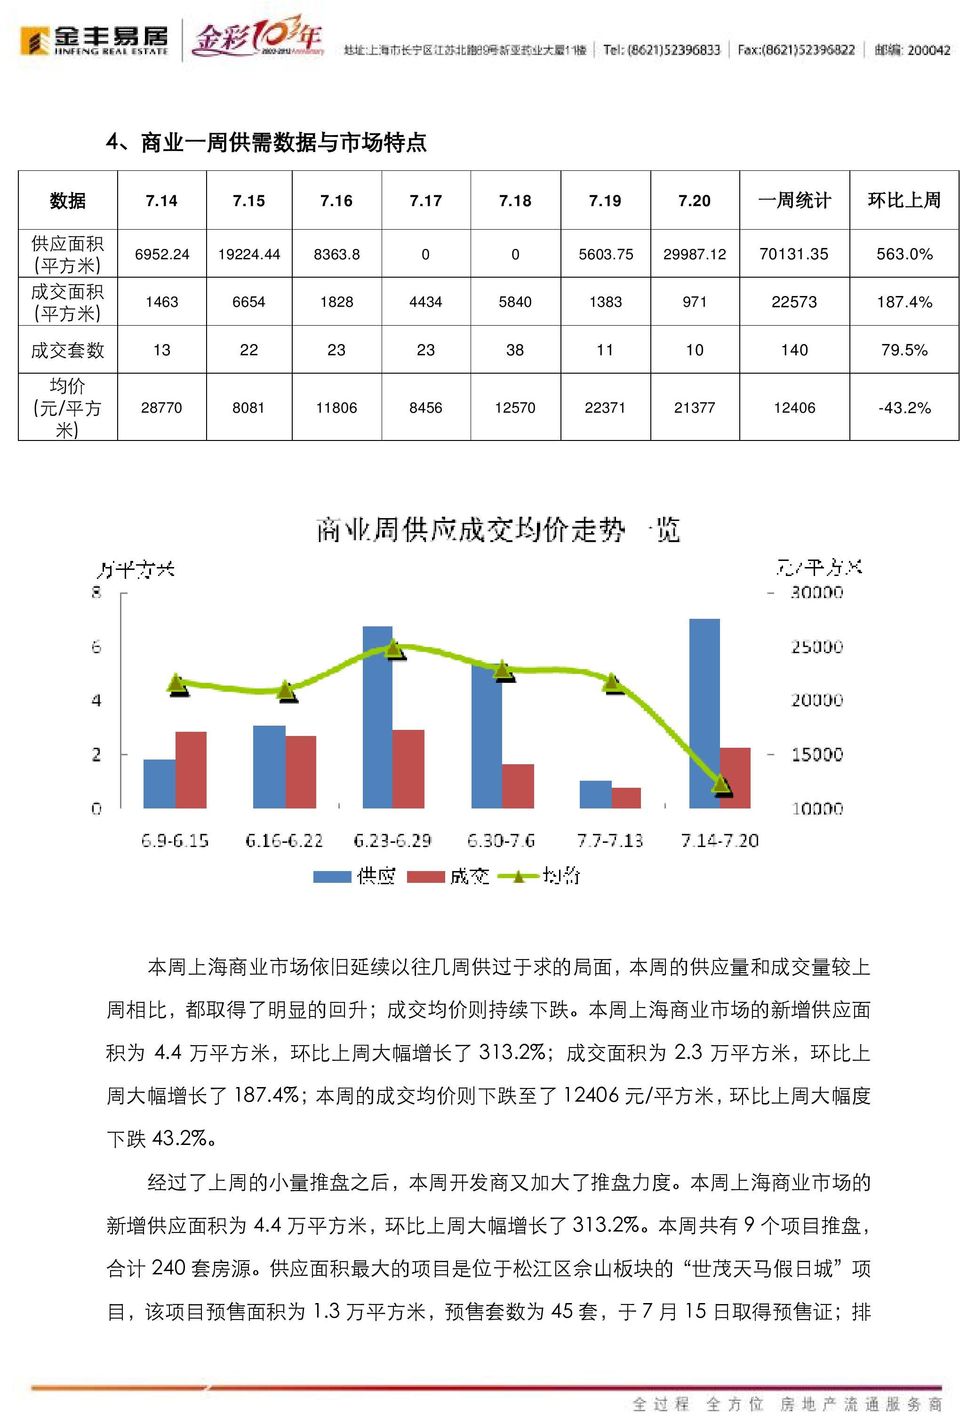 2% 本 周 上 海 商 业 市 场 依 旧 延 续 以 往 几 周 供 过 于 求 的 局 面, 本 周 的 供 应 量 和 成 交 量 较 上 周 相 比, 都 取 得 了 明 显 的 回 升 ; 成 交 均 价 则 持 续 下 跌 本 周 上 海 商 业 市 场 的 新 增 供 应 面 积 为 4.4 万 平 方 米, 环 比 上 周 大 幅 增 长 了 313.2%; 为 2.